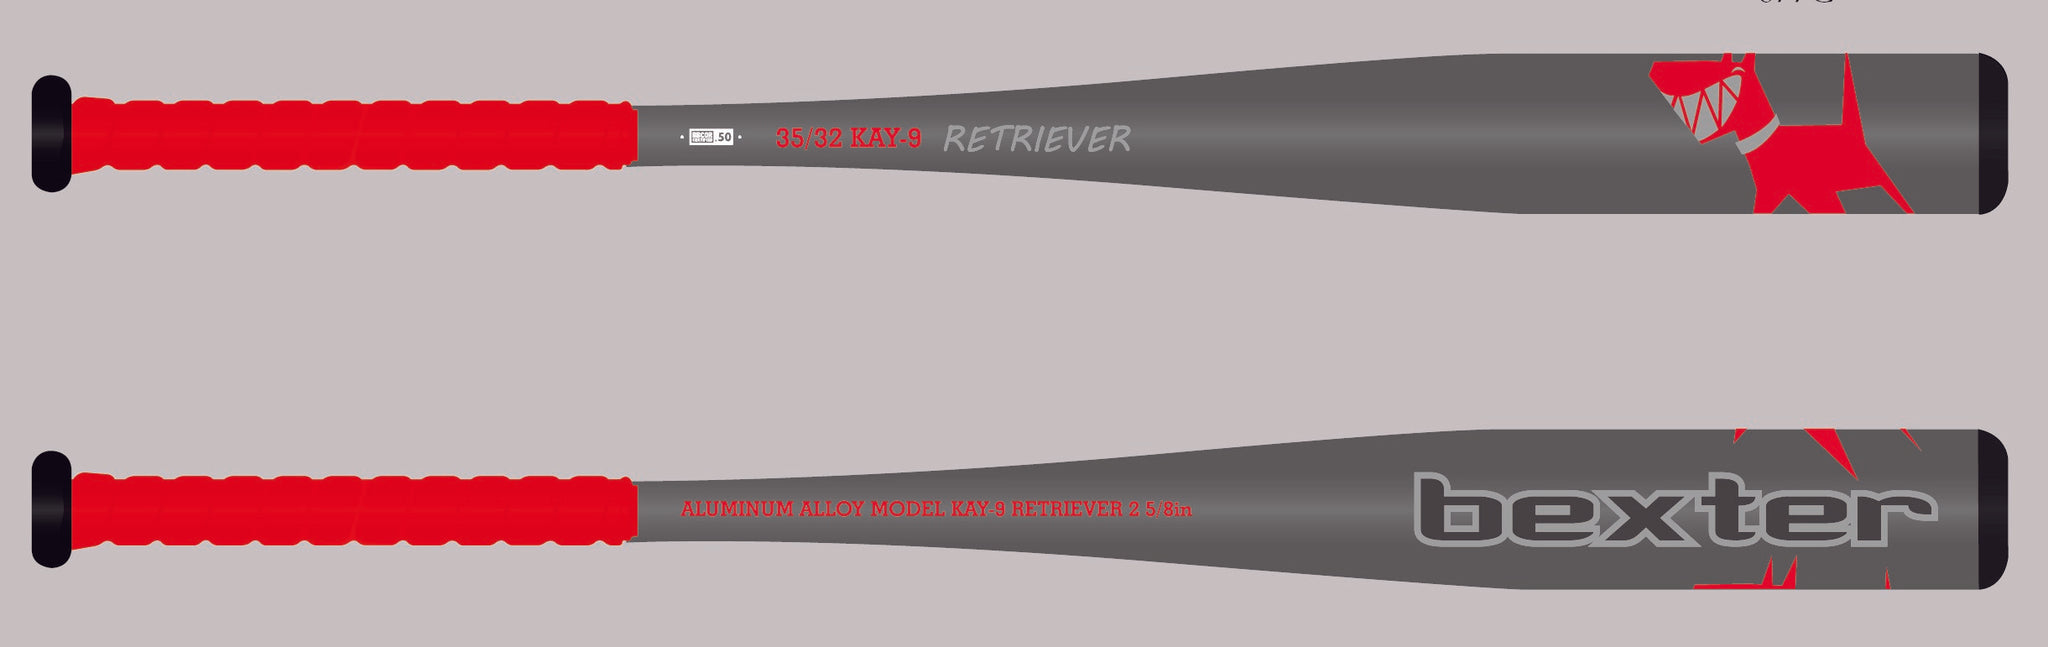 RETRIEVER KAY-9 BBCOR Certified .50-Bats-Bexter Sports